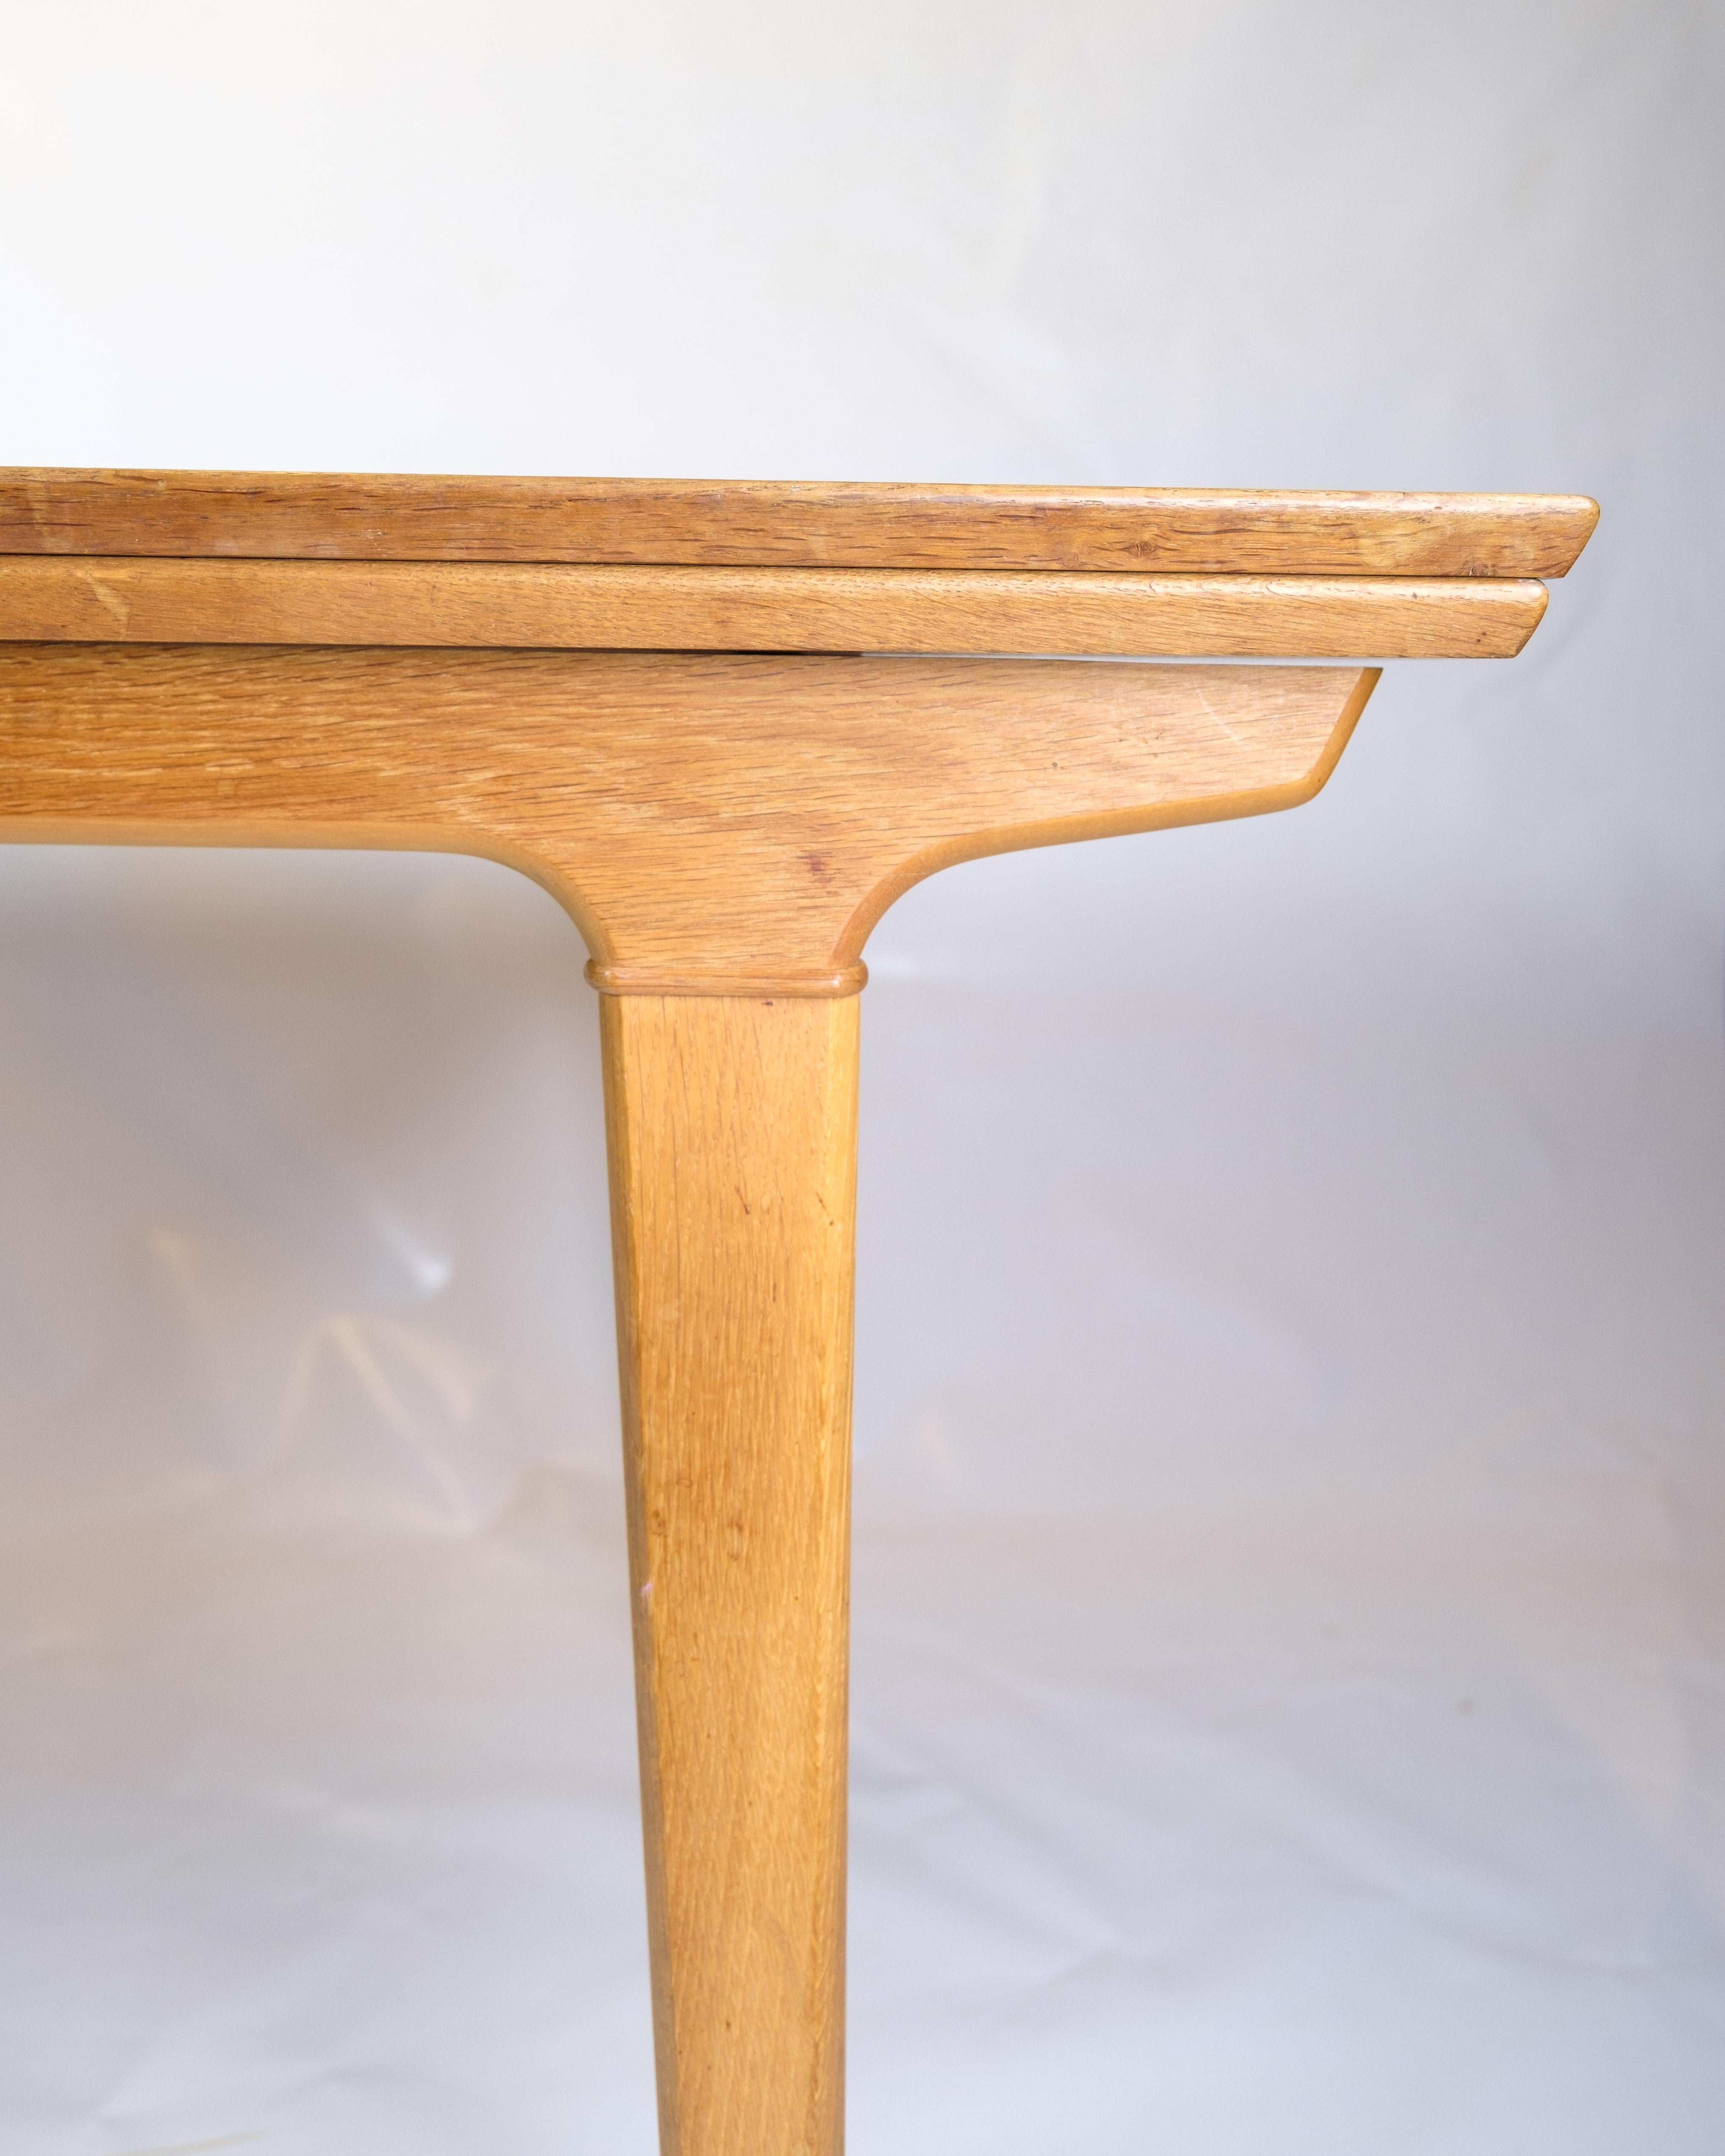 Der Esstisch aus Eichenholz, entworfen von Johannes Andersen, steht für die hervorragende Qualität und zeitlose Ästhetik des dänischen Designs der 1960er Jahre. Mit seiner schönen Eichenholzoberfläche strahlt der Tisch eine natürliche Wärme und